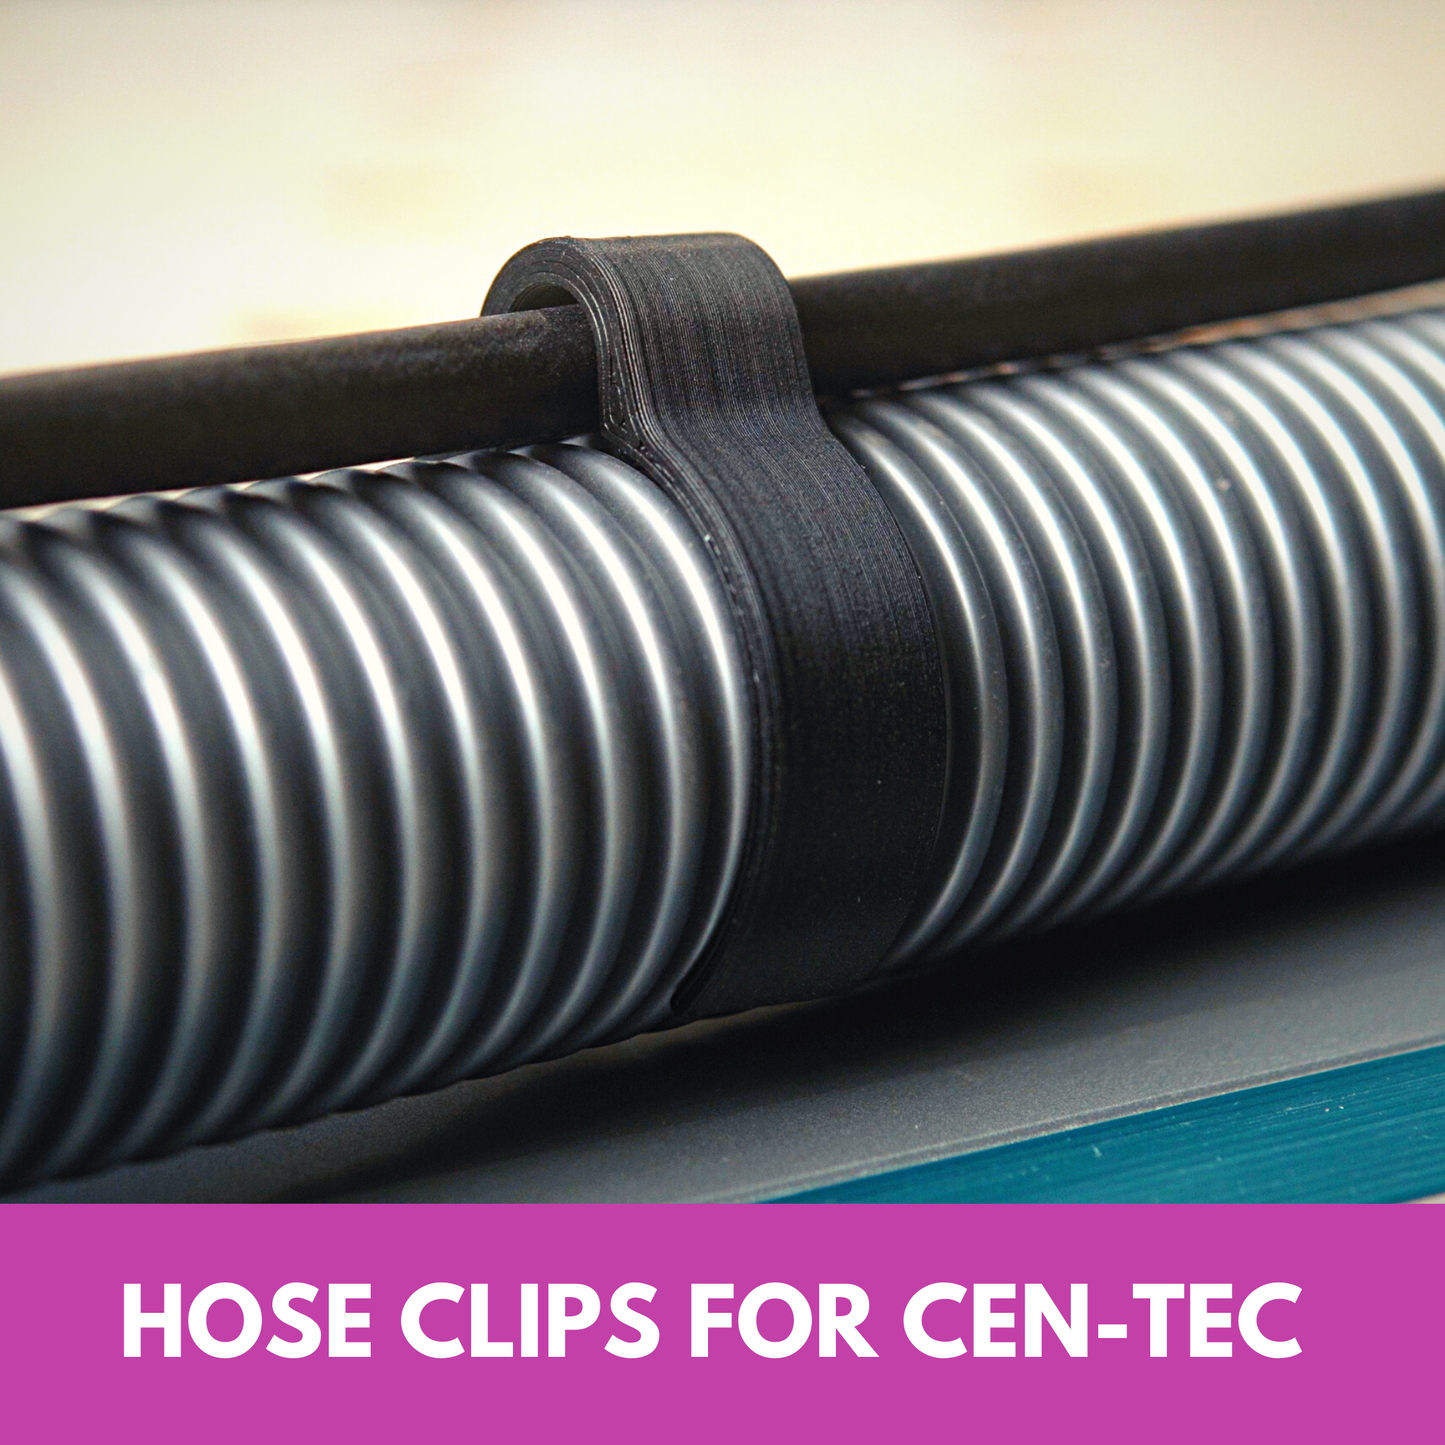 Hose Clips for Cen-Tec 1.25" Hose (8 pack)